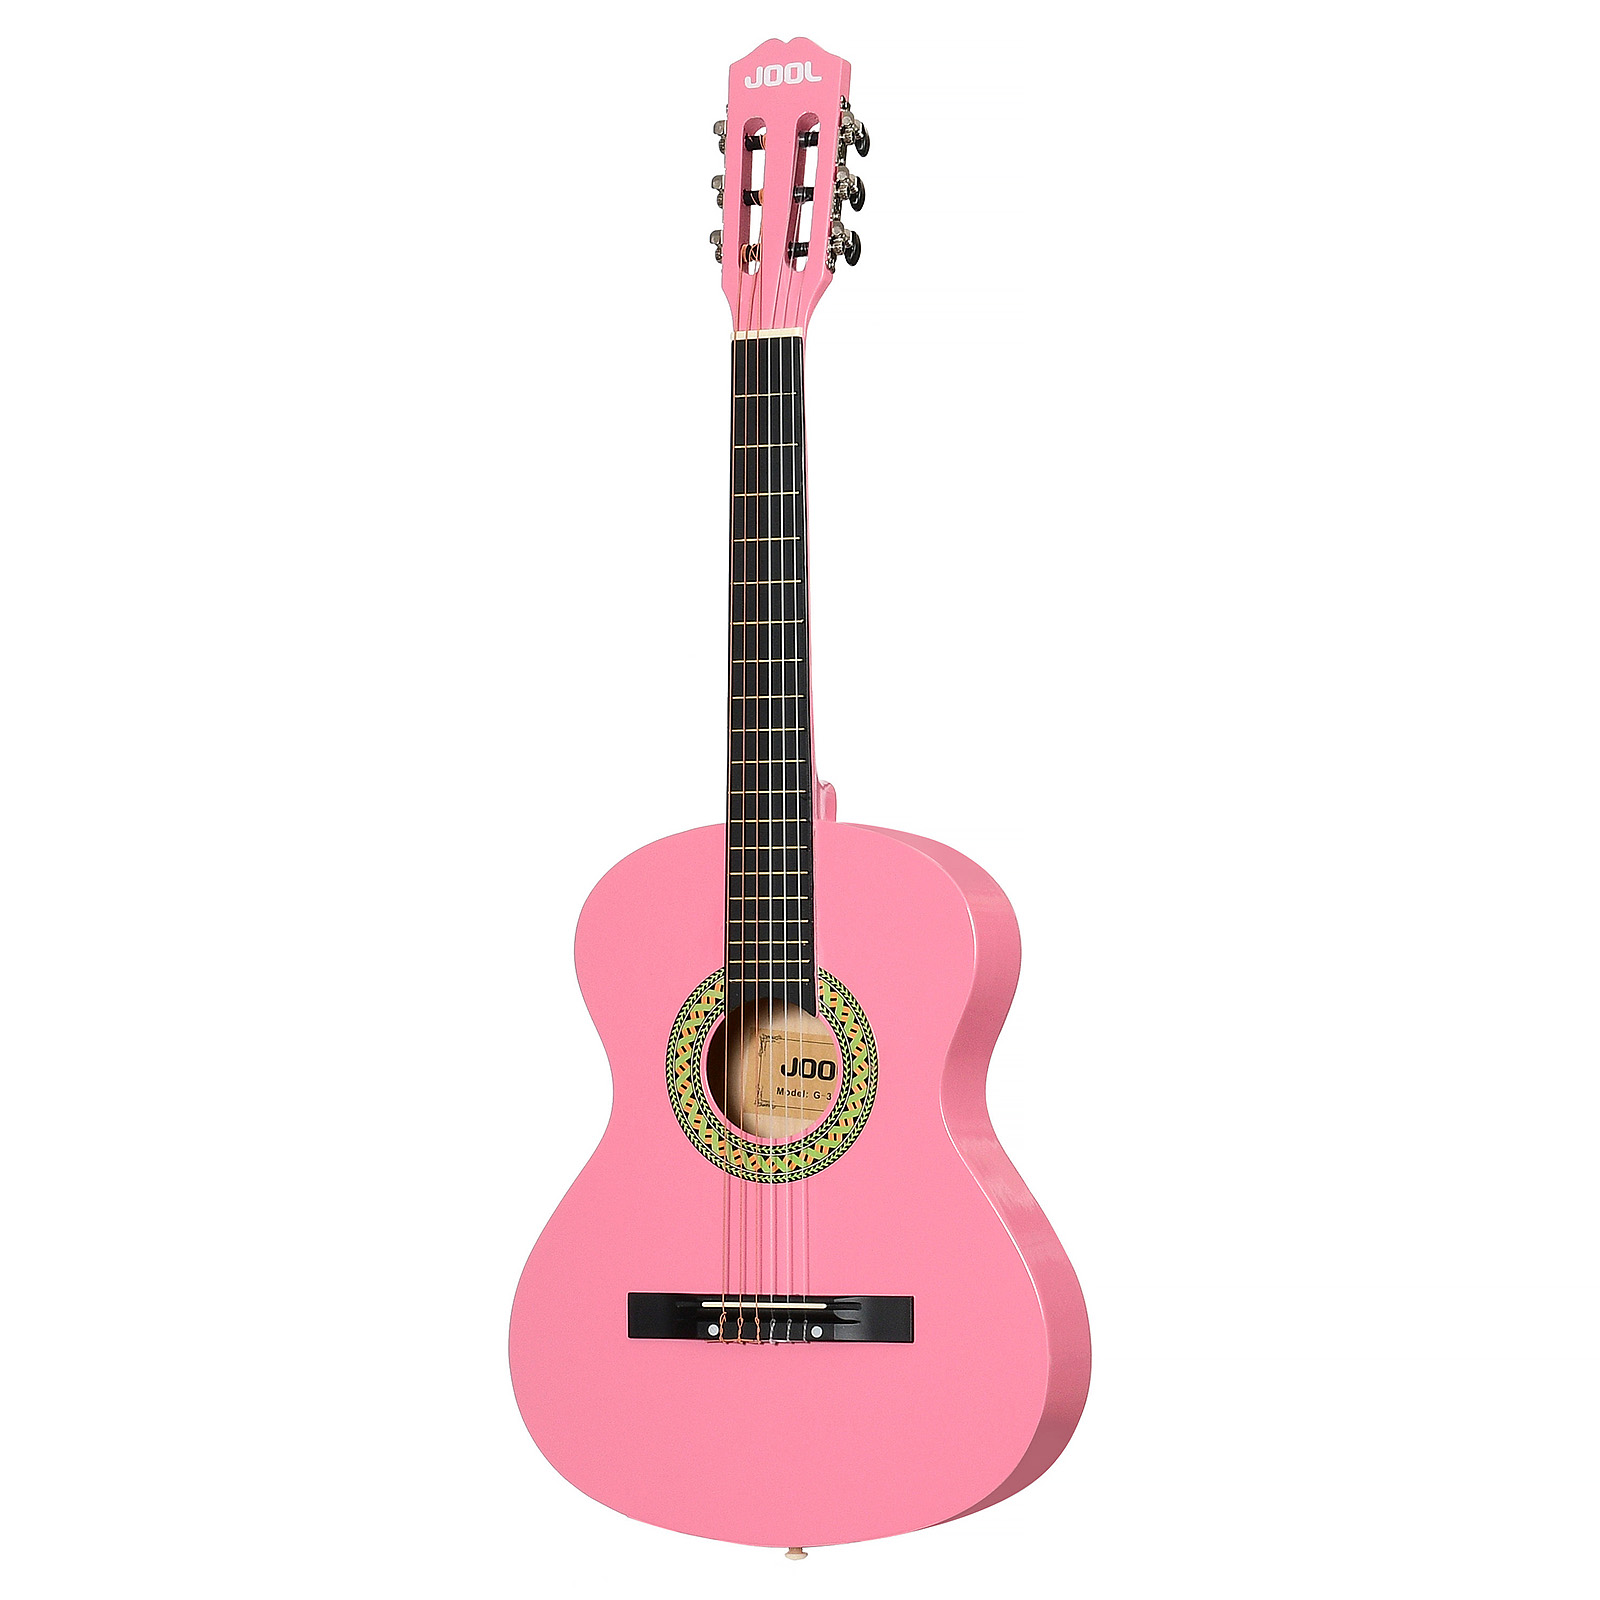 Jool G-36 Pk 3/4 - Классическая Уменьшенная (детская) гитара размер 3/4 9-14 лет розовая